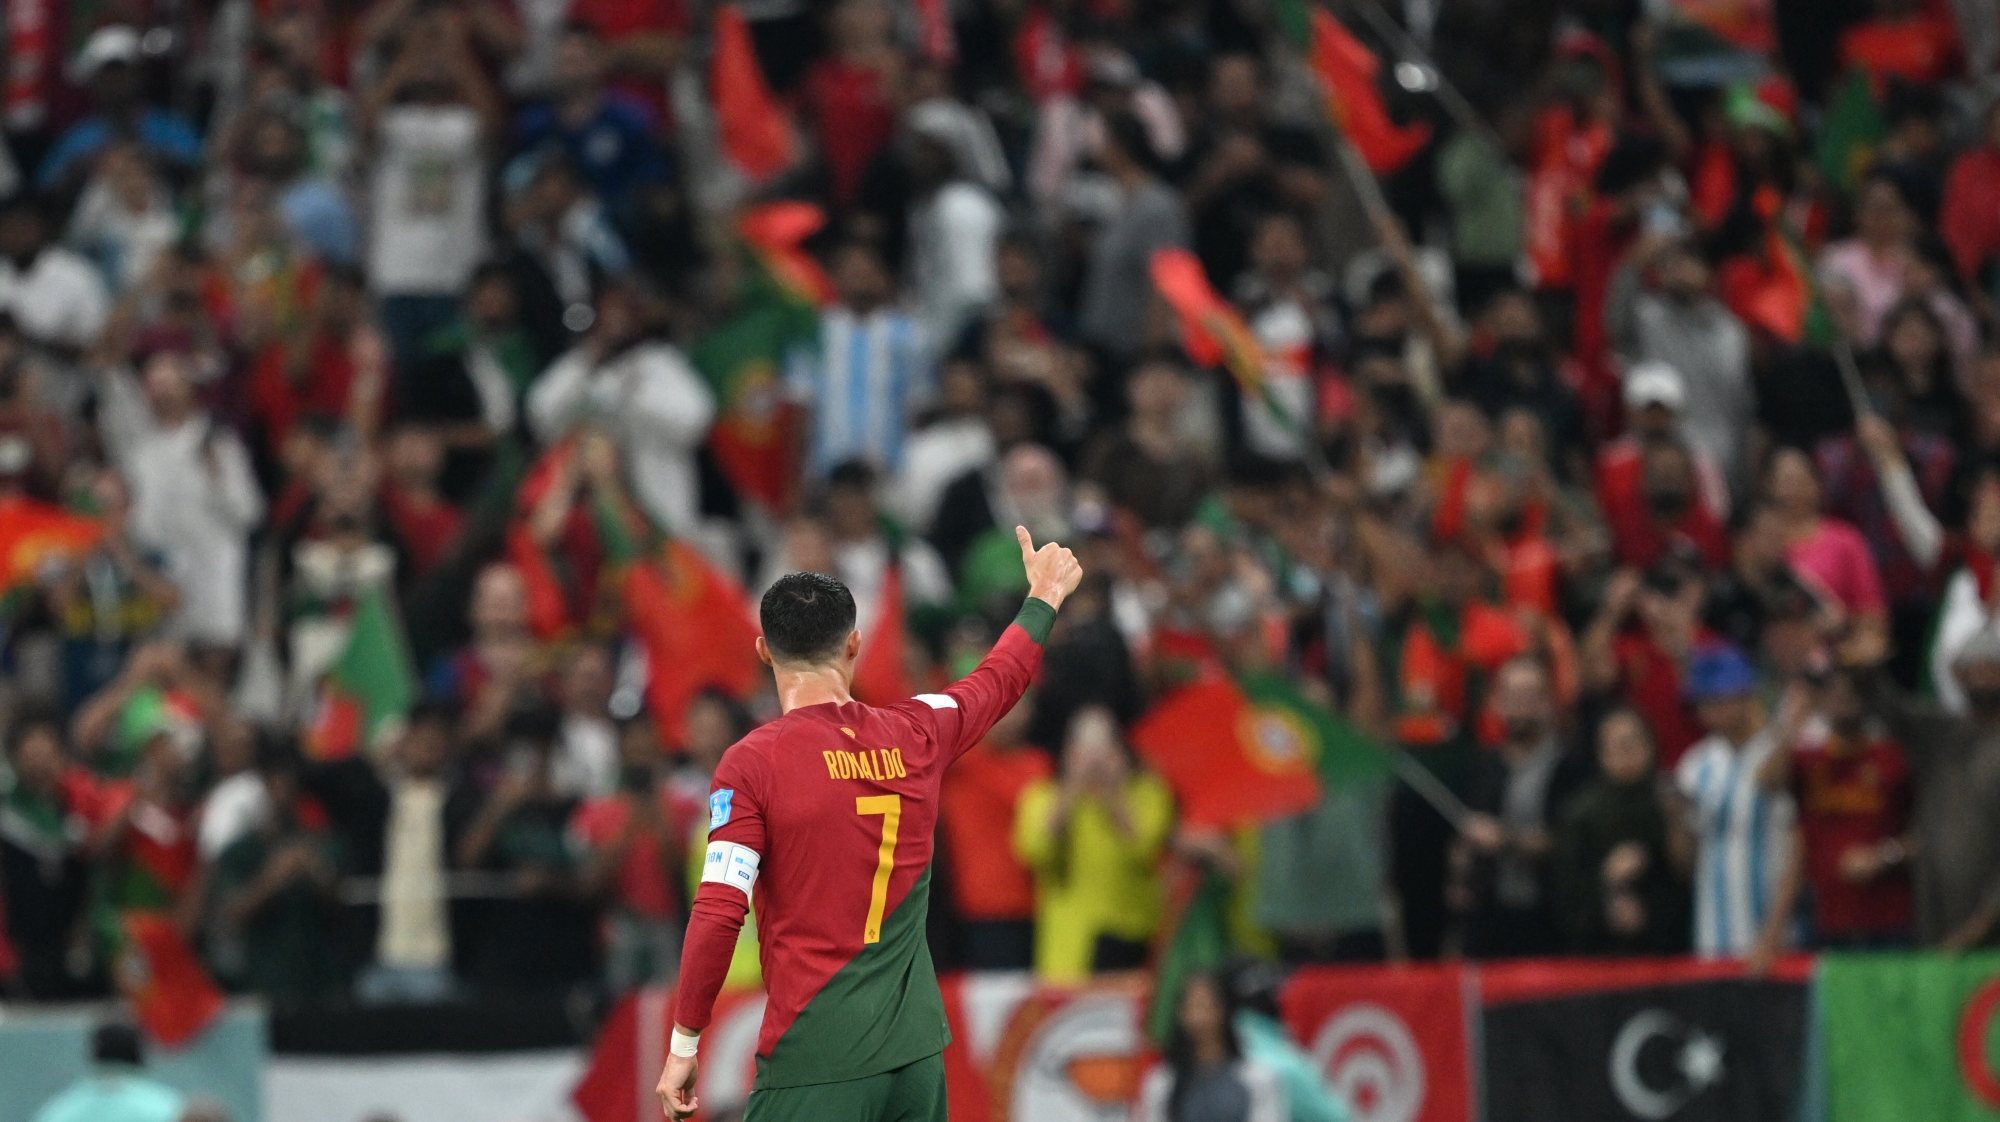 Ronaldo cumprimentou companheiros e adversários, agradeceu apoio dos adeptos no final e foi o primeiro a abandonar o relvado